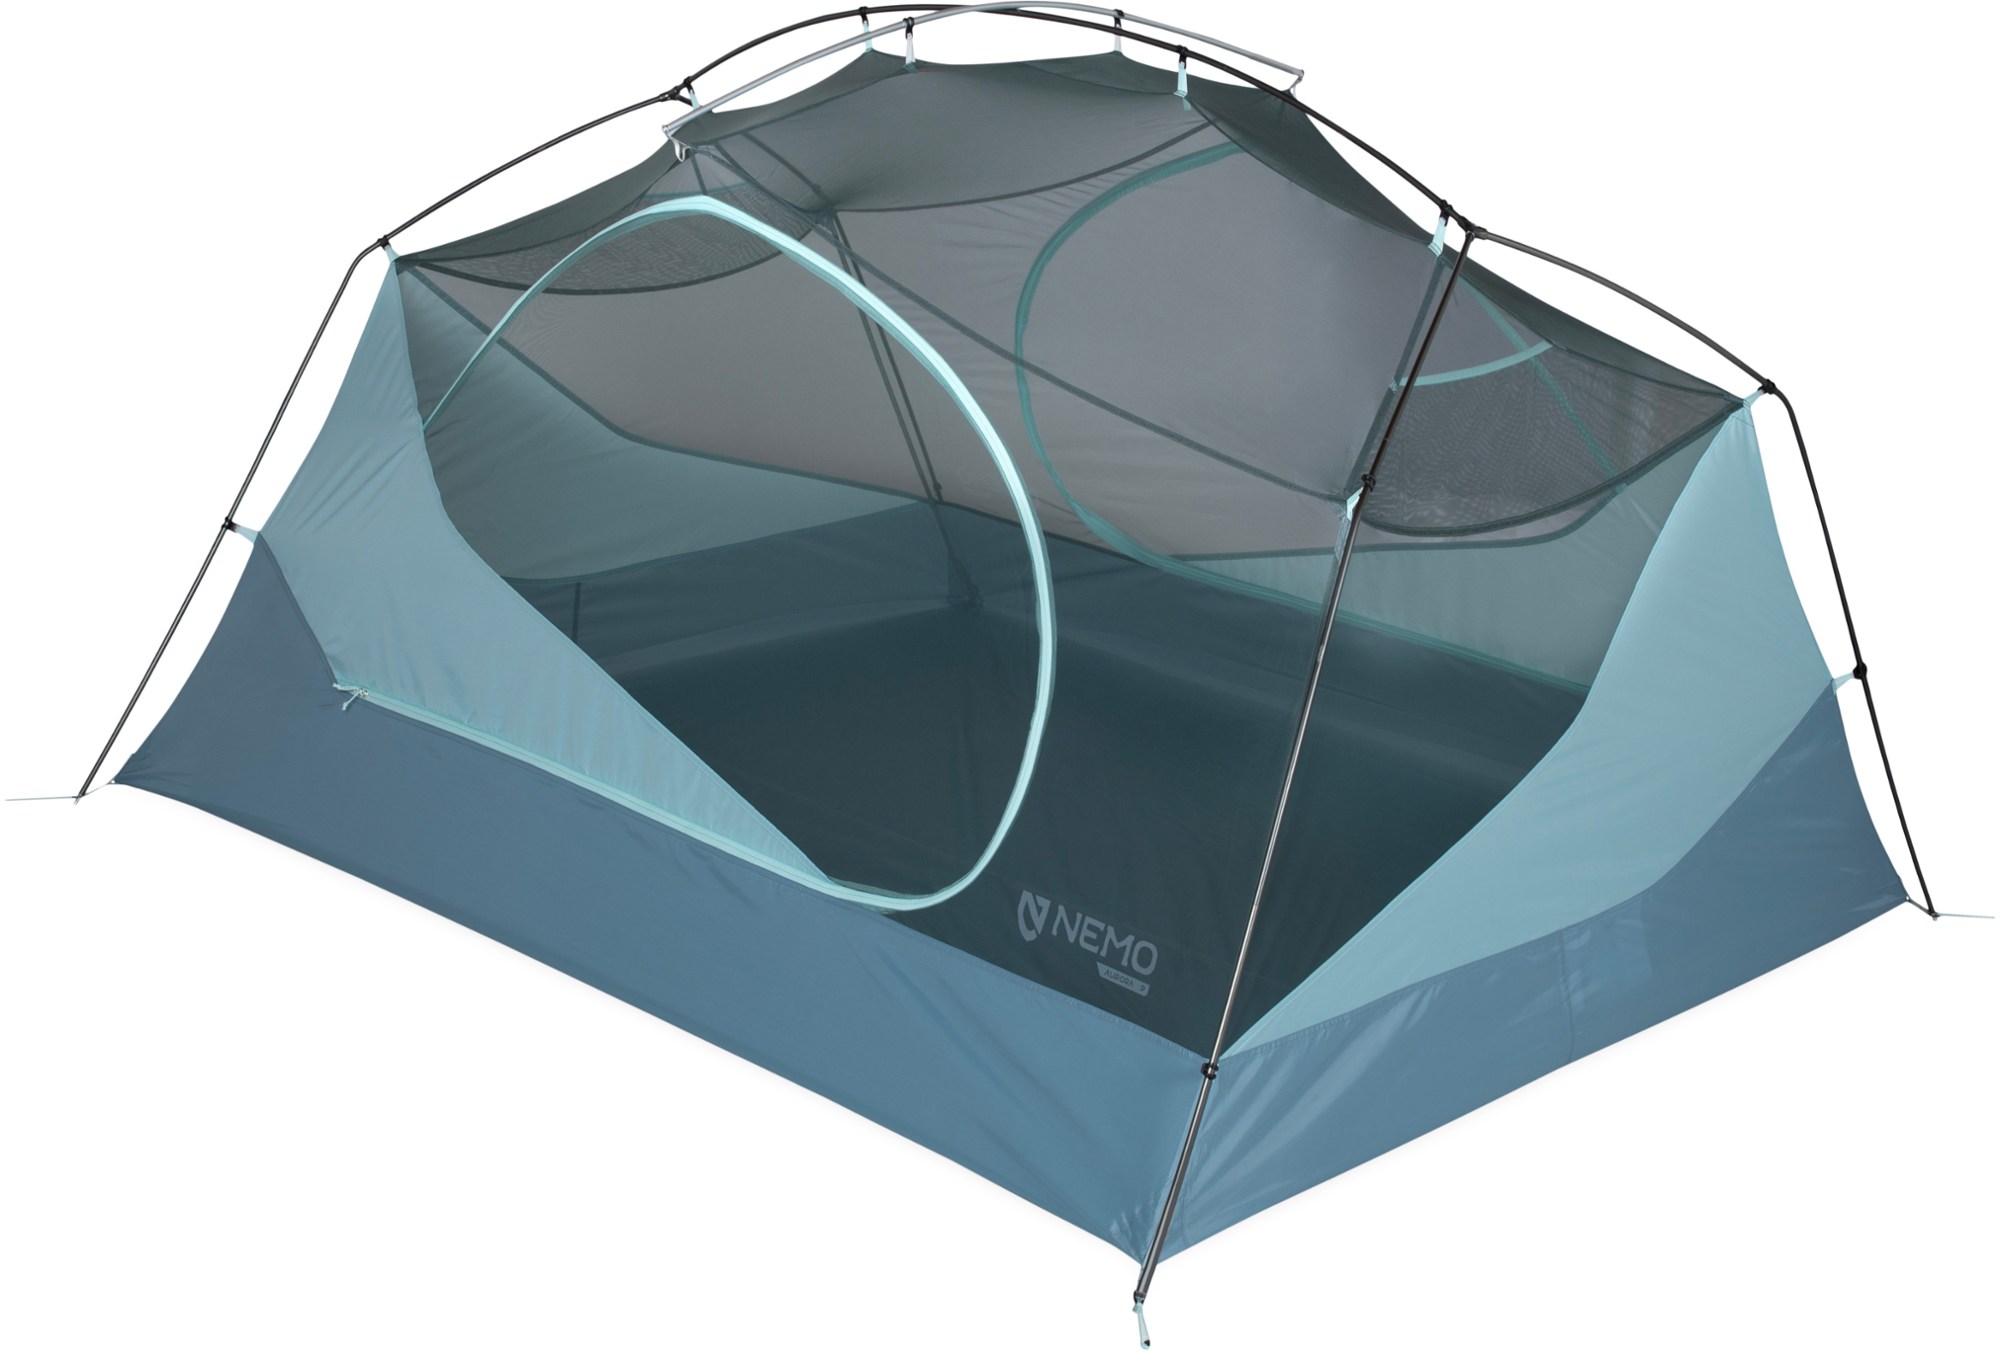 Nemo Aurora 2 backpacking tent